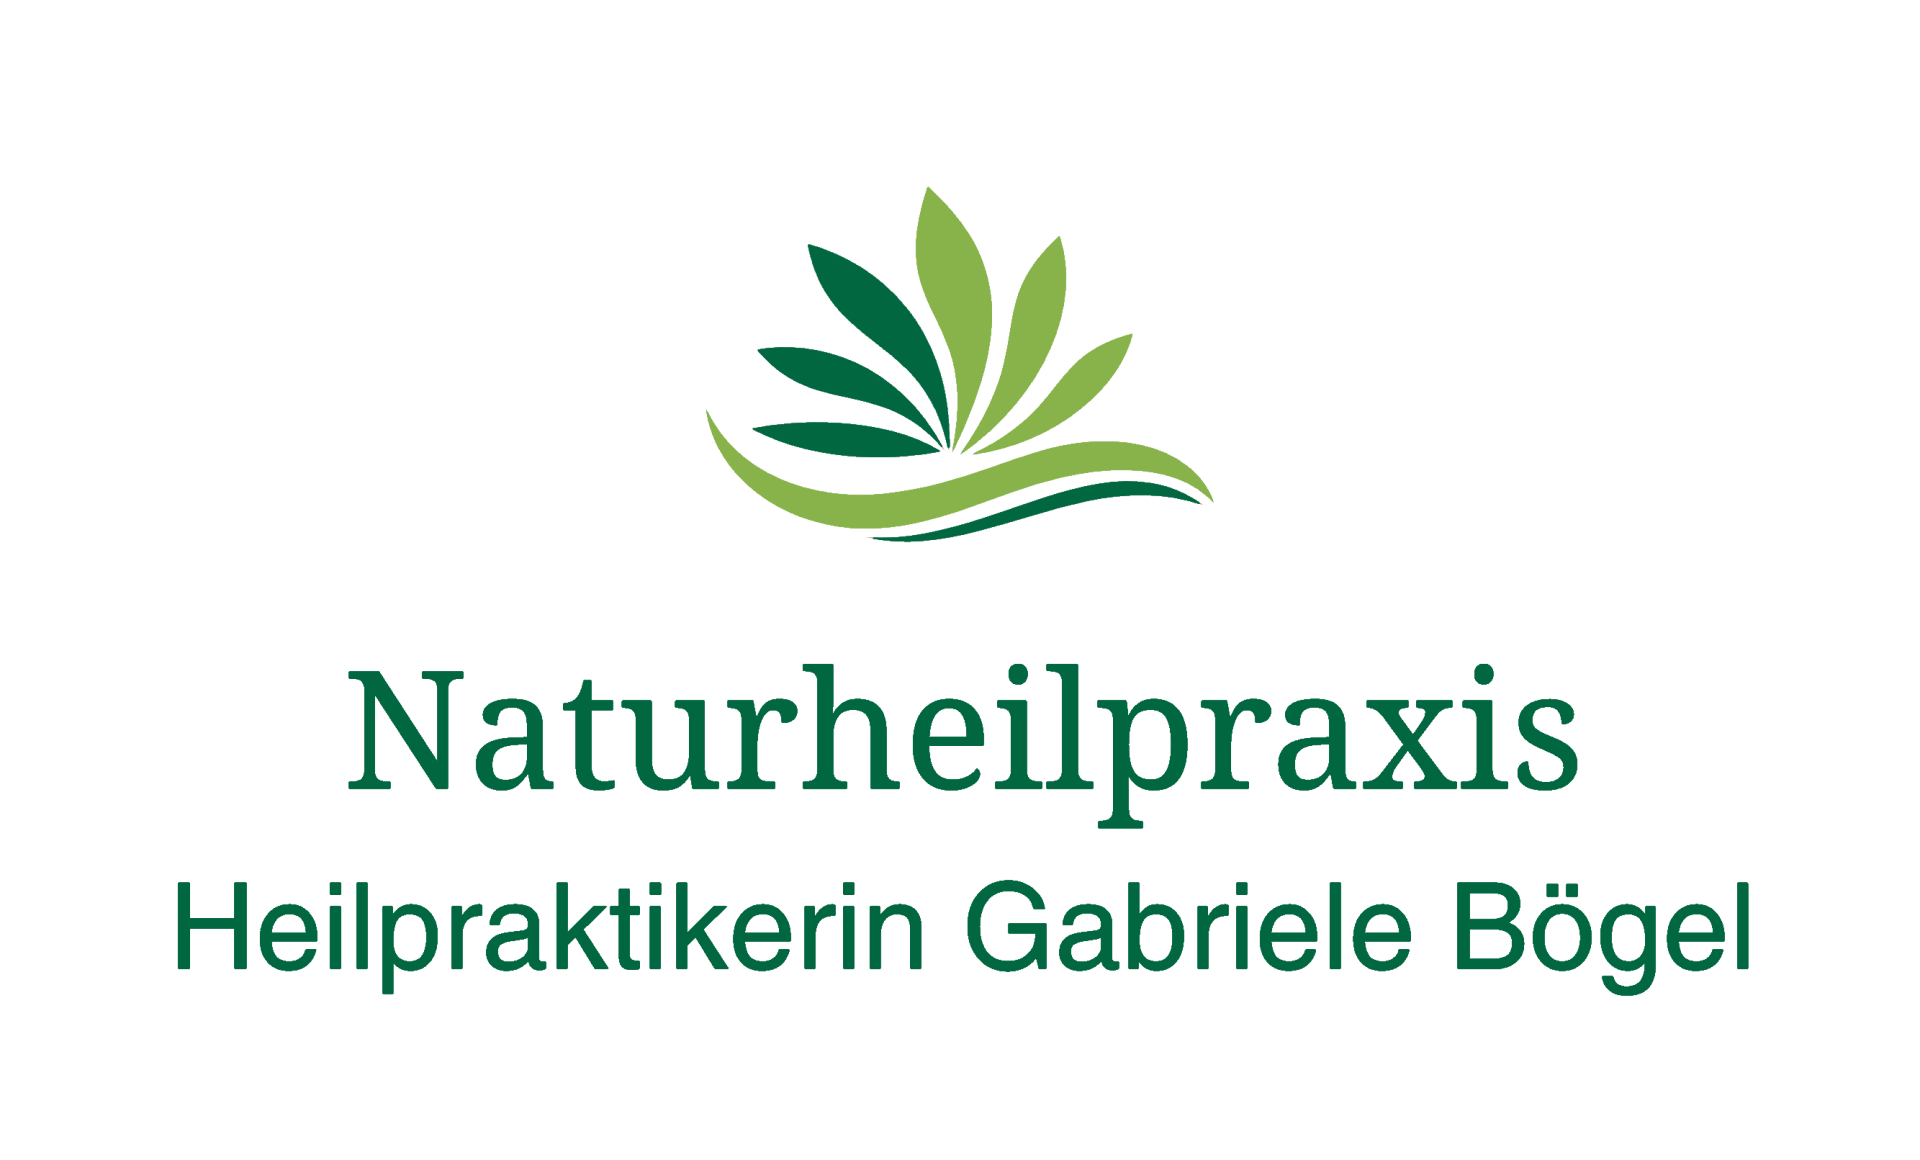 Naturheilpraxis Heilpraktikerin Gabriele Bögel